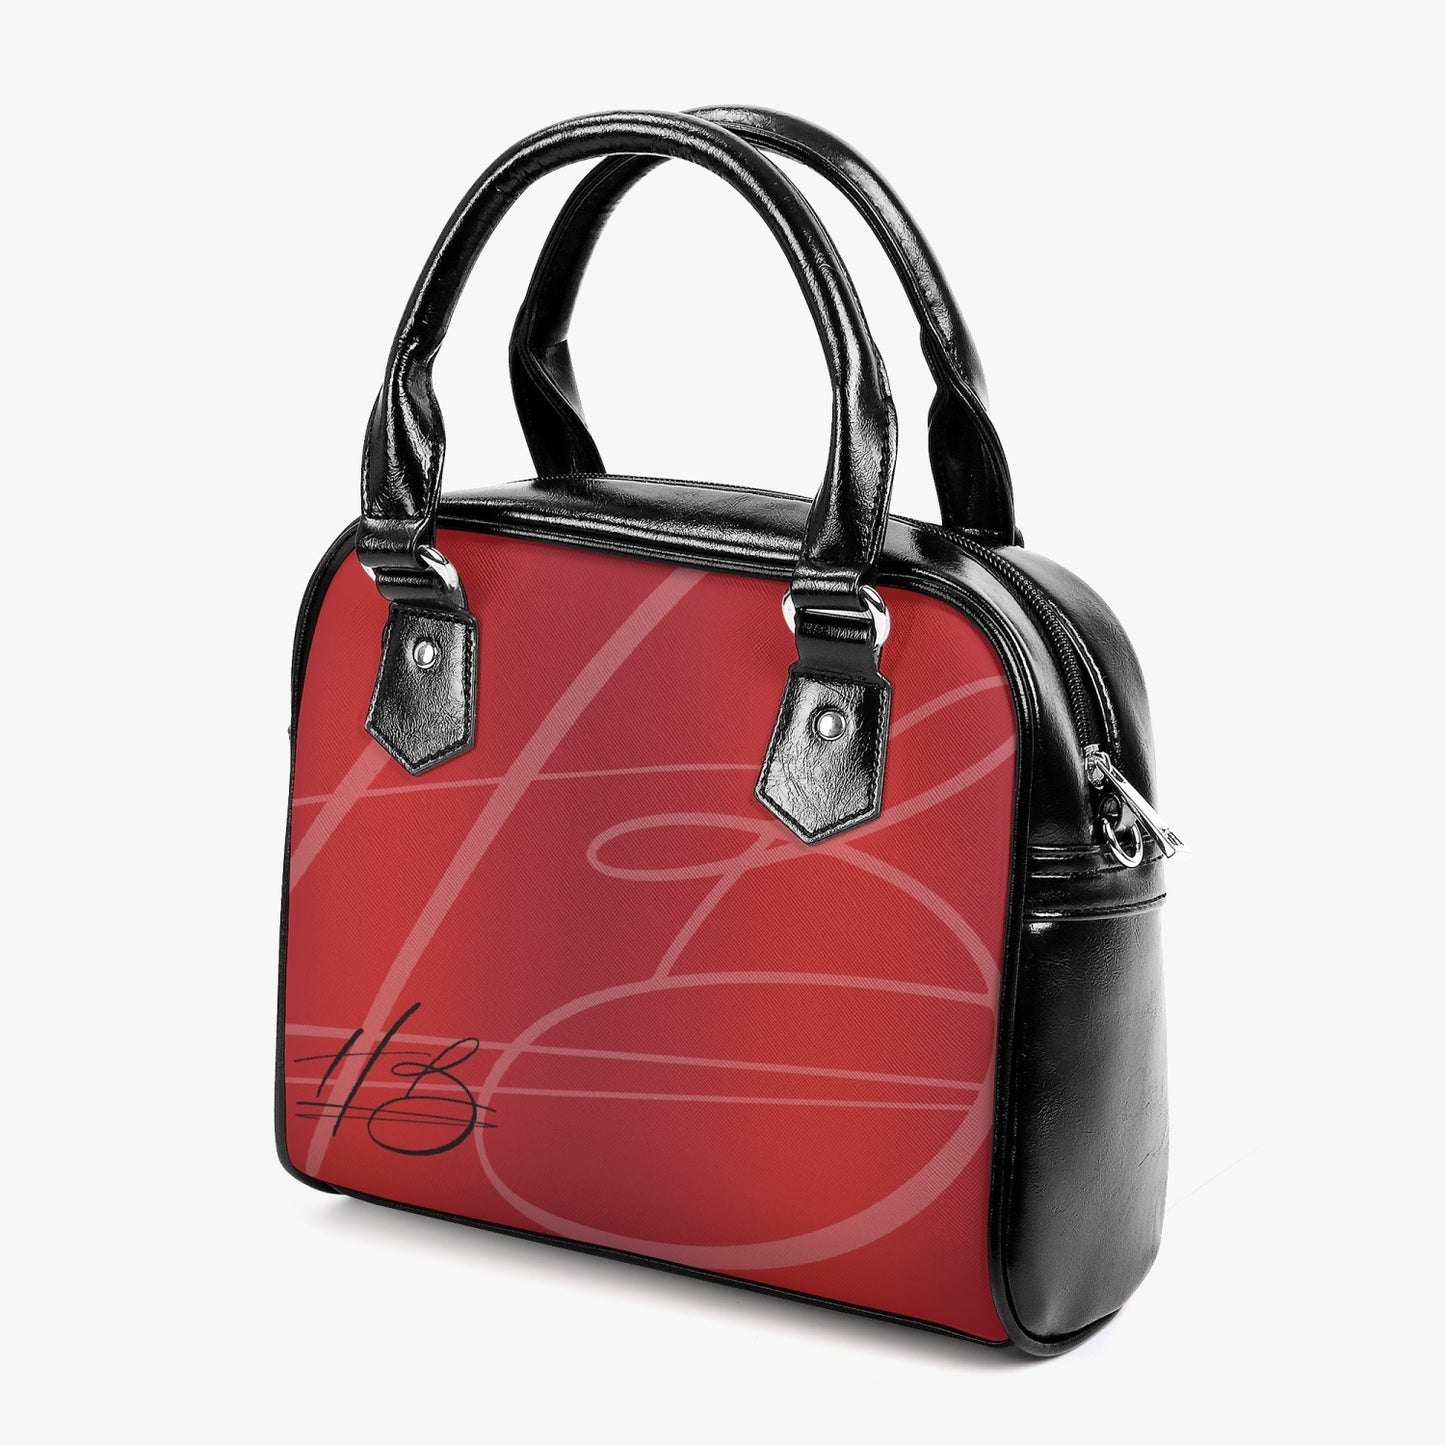 HB Vegan Leather Shoulder Bag - Ruby